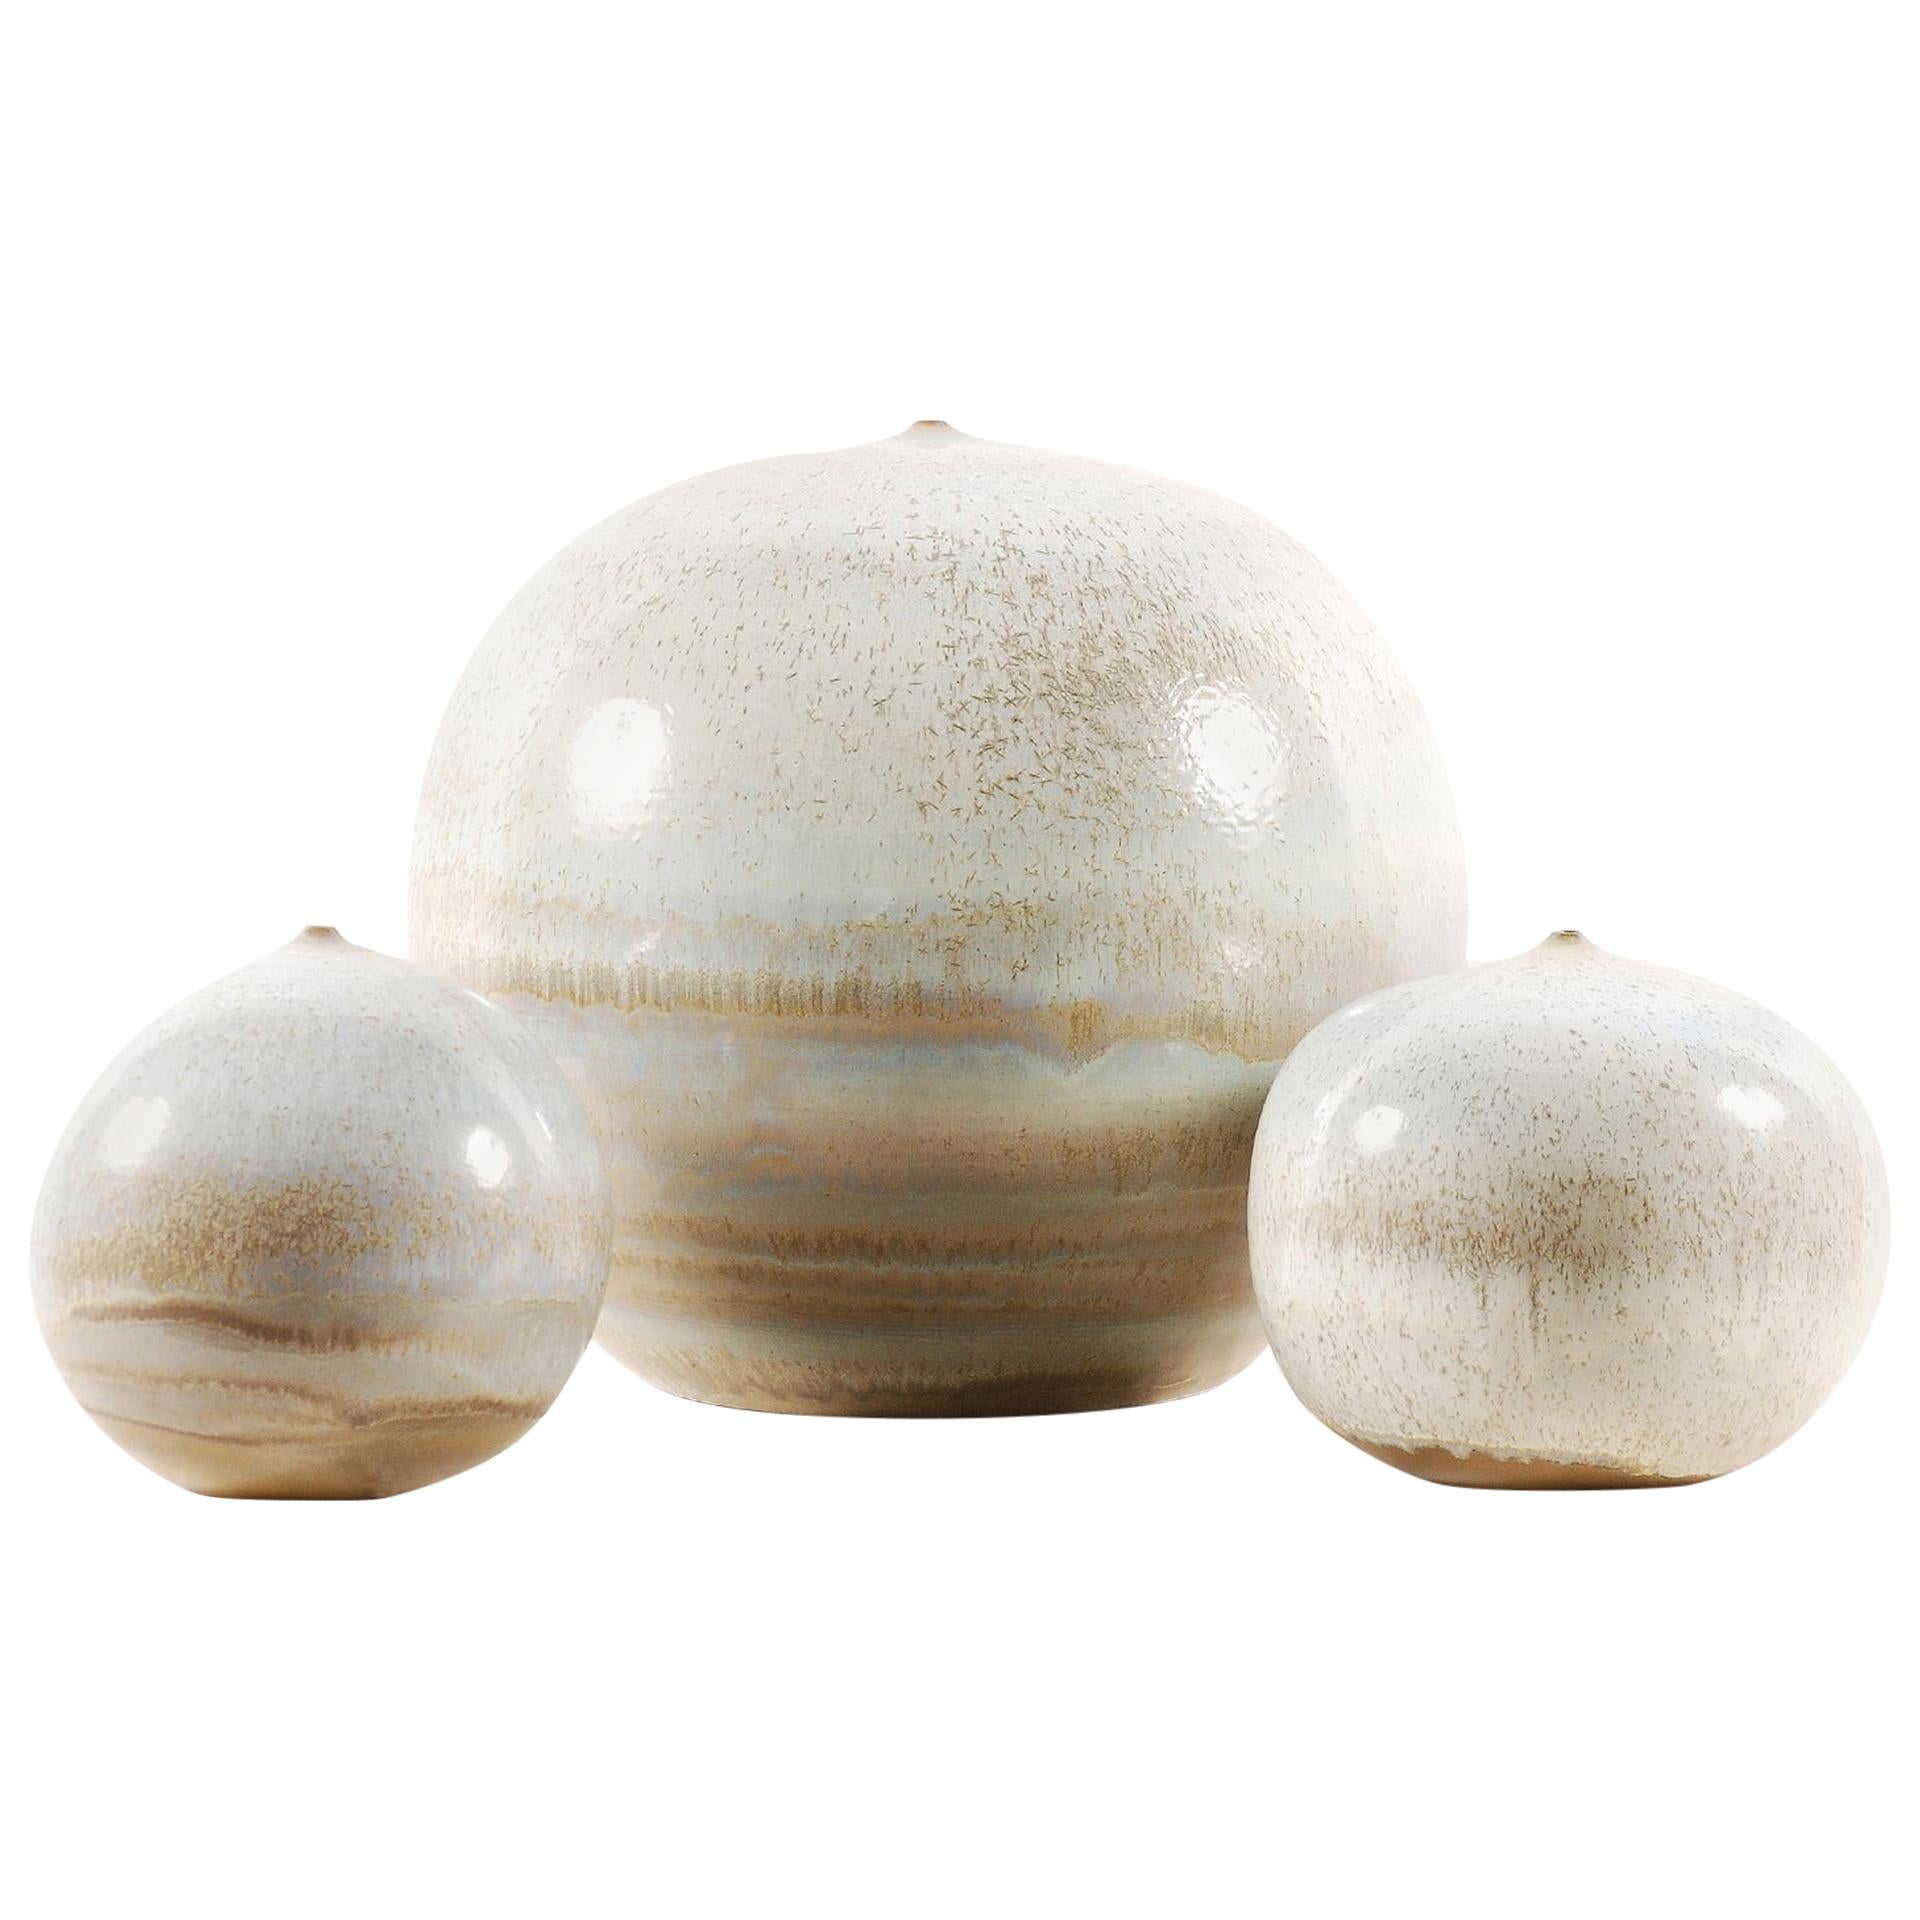 Antonio Lampecco, Set of 3 Spherical Ceramics